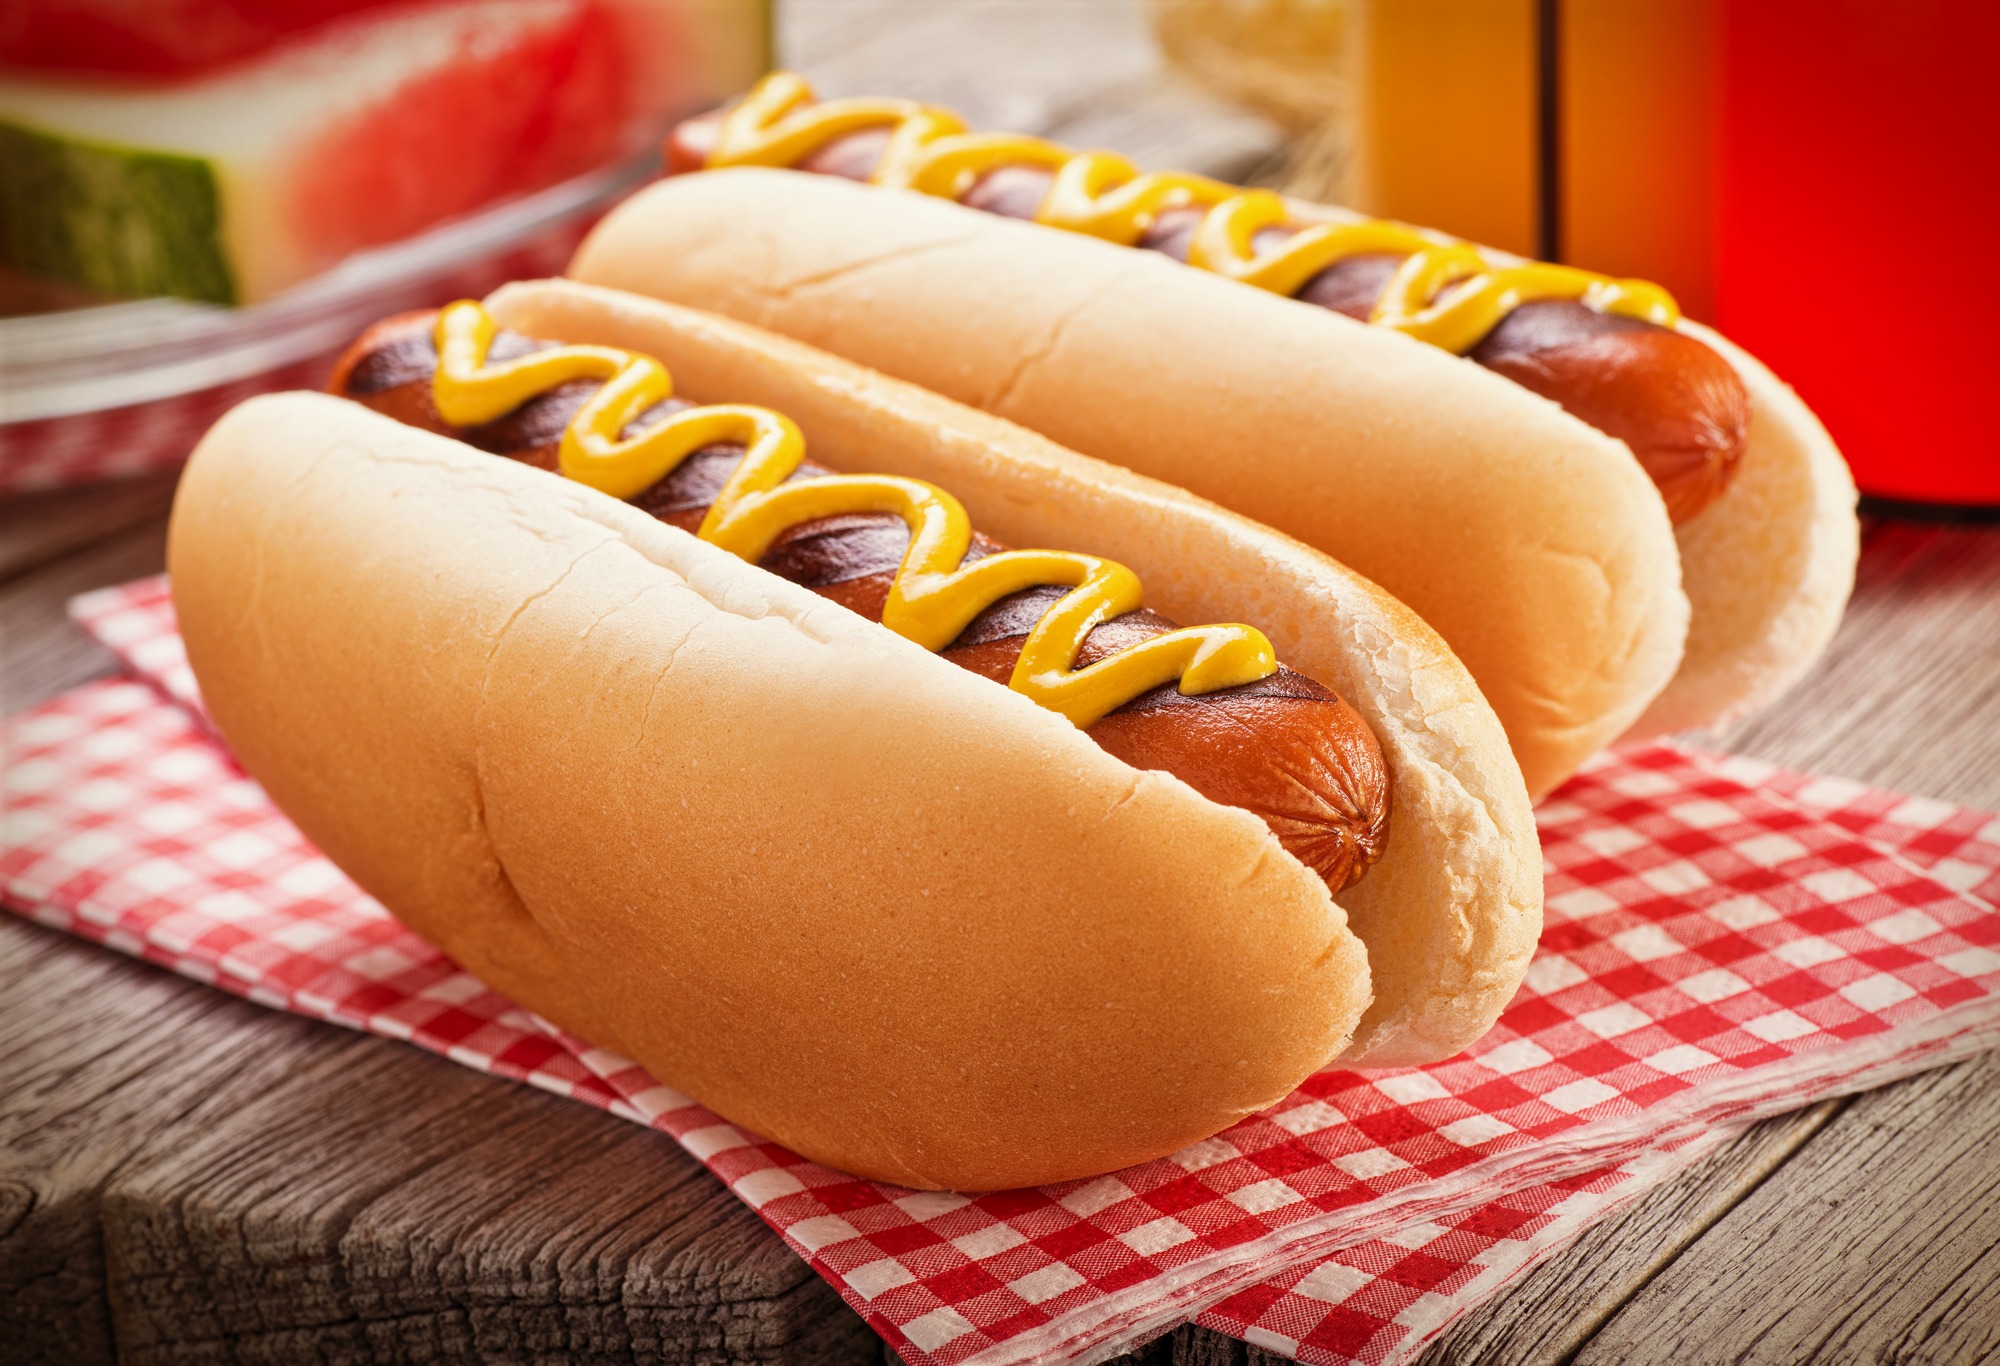 Cachorro-quente Clássico cachorro-quente com salsicha, pão, molho de tomate, maionese, ketchup, mostarda, milho, ervilha e batata palha.